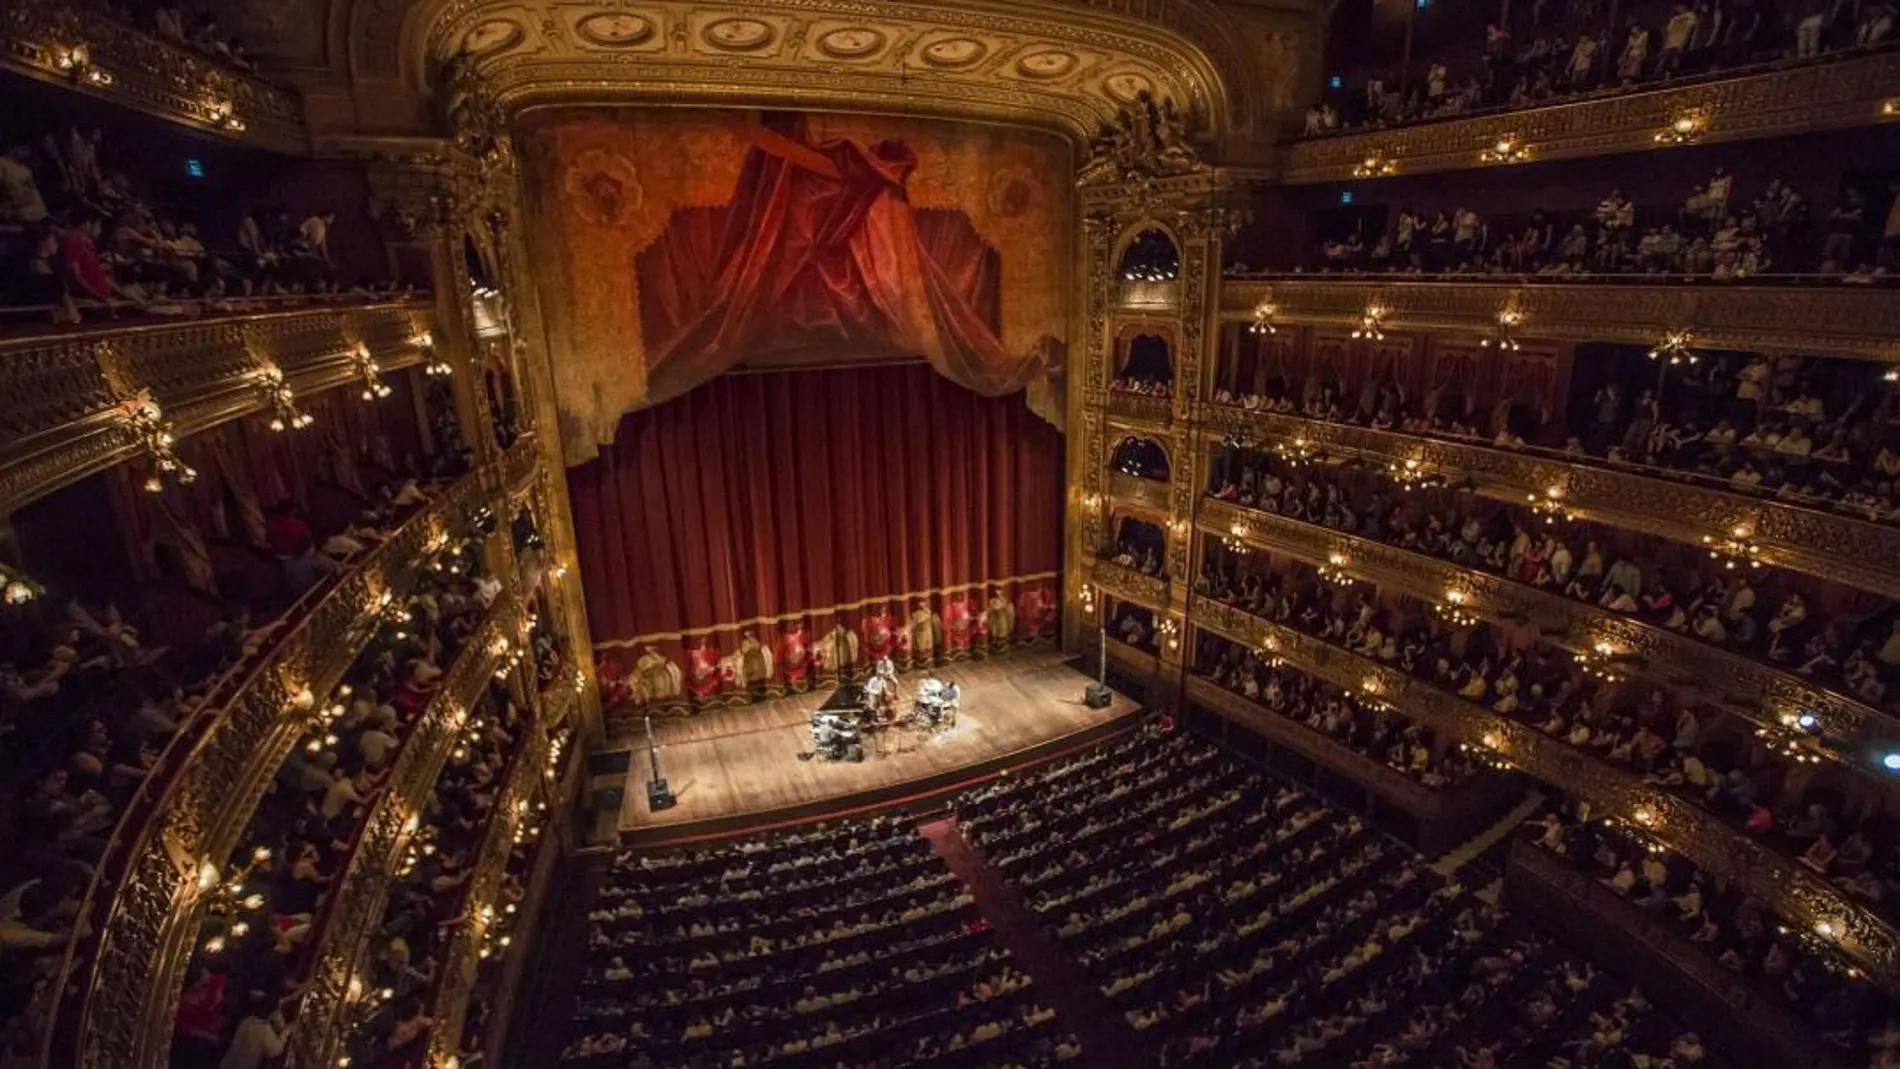 El Teatro Colón